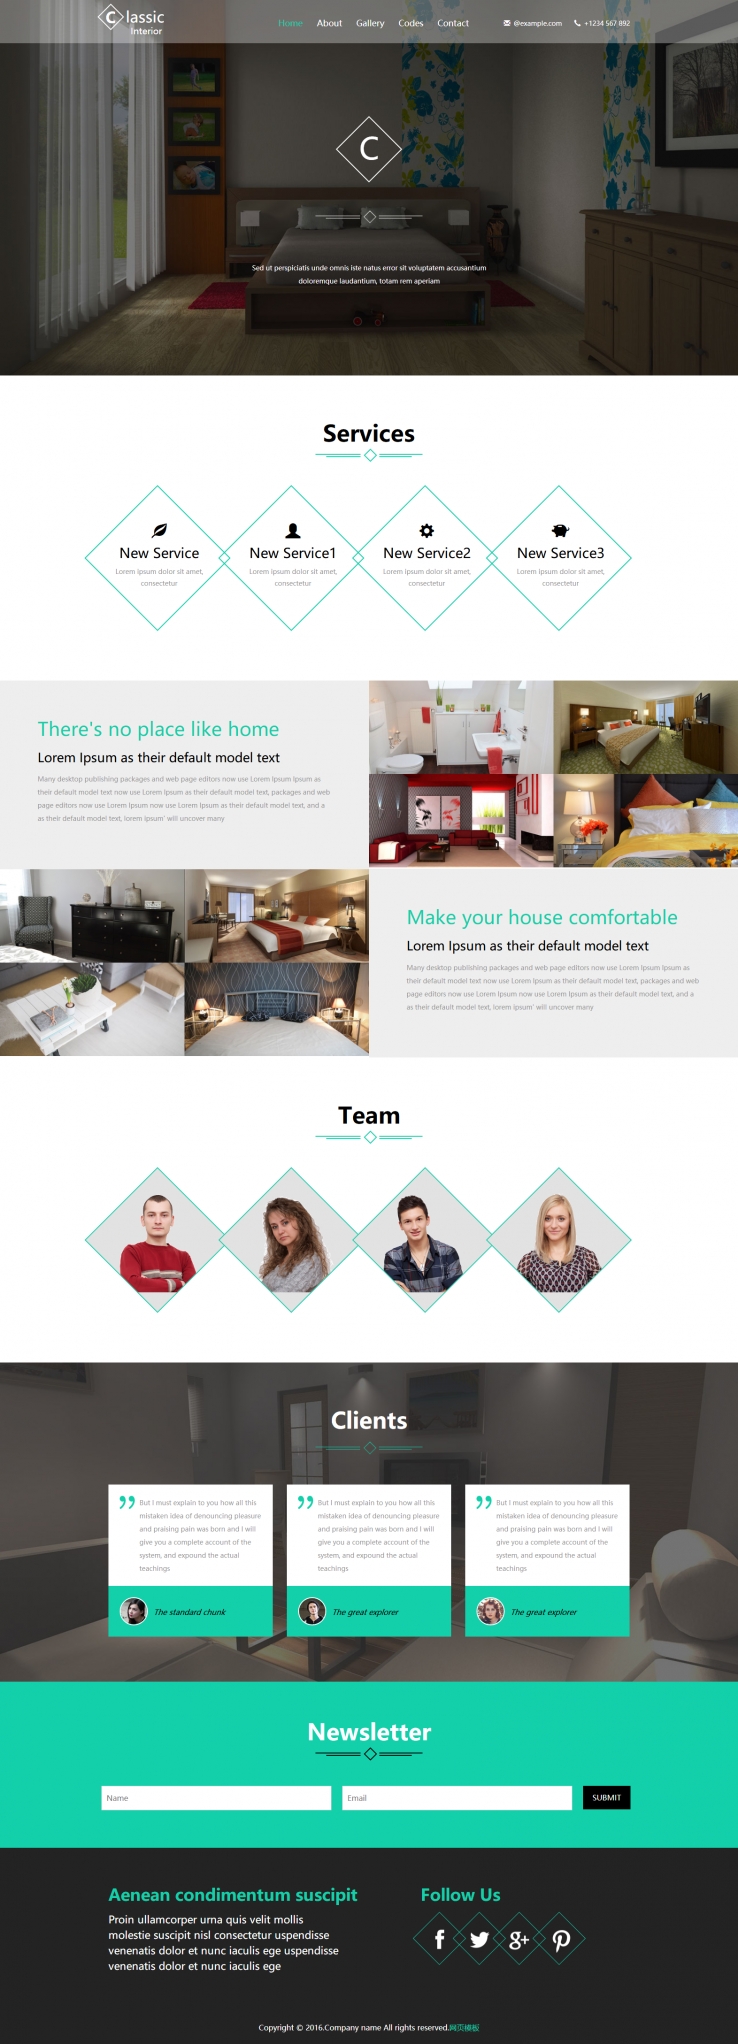 简洁白色风格的室内设计企业网站模板